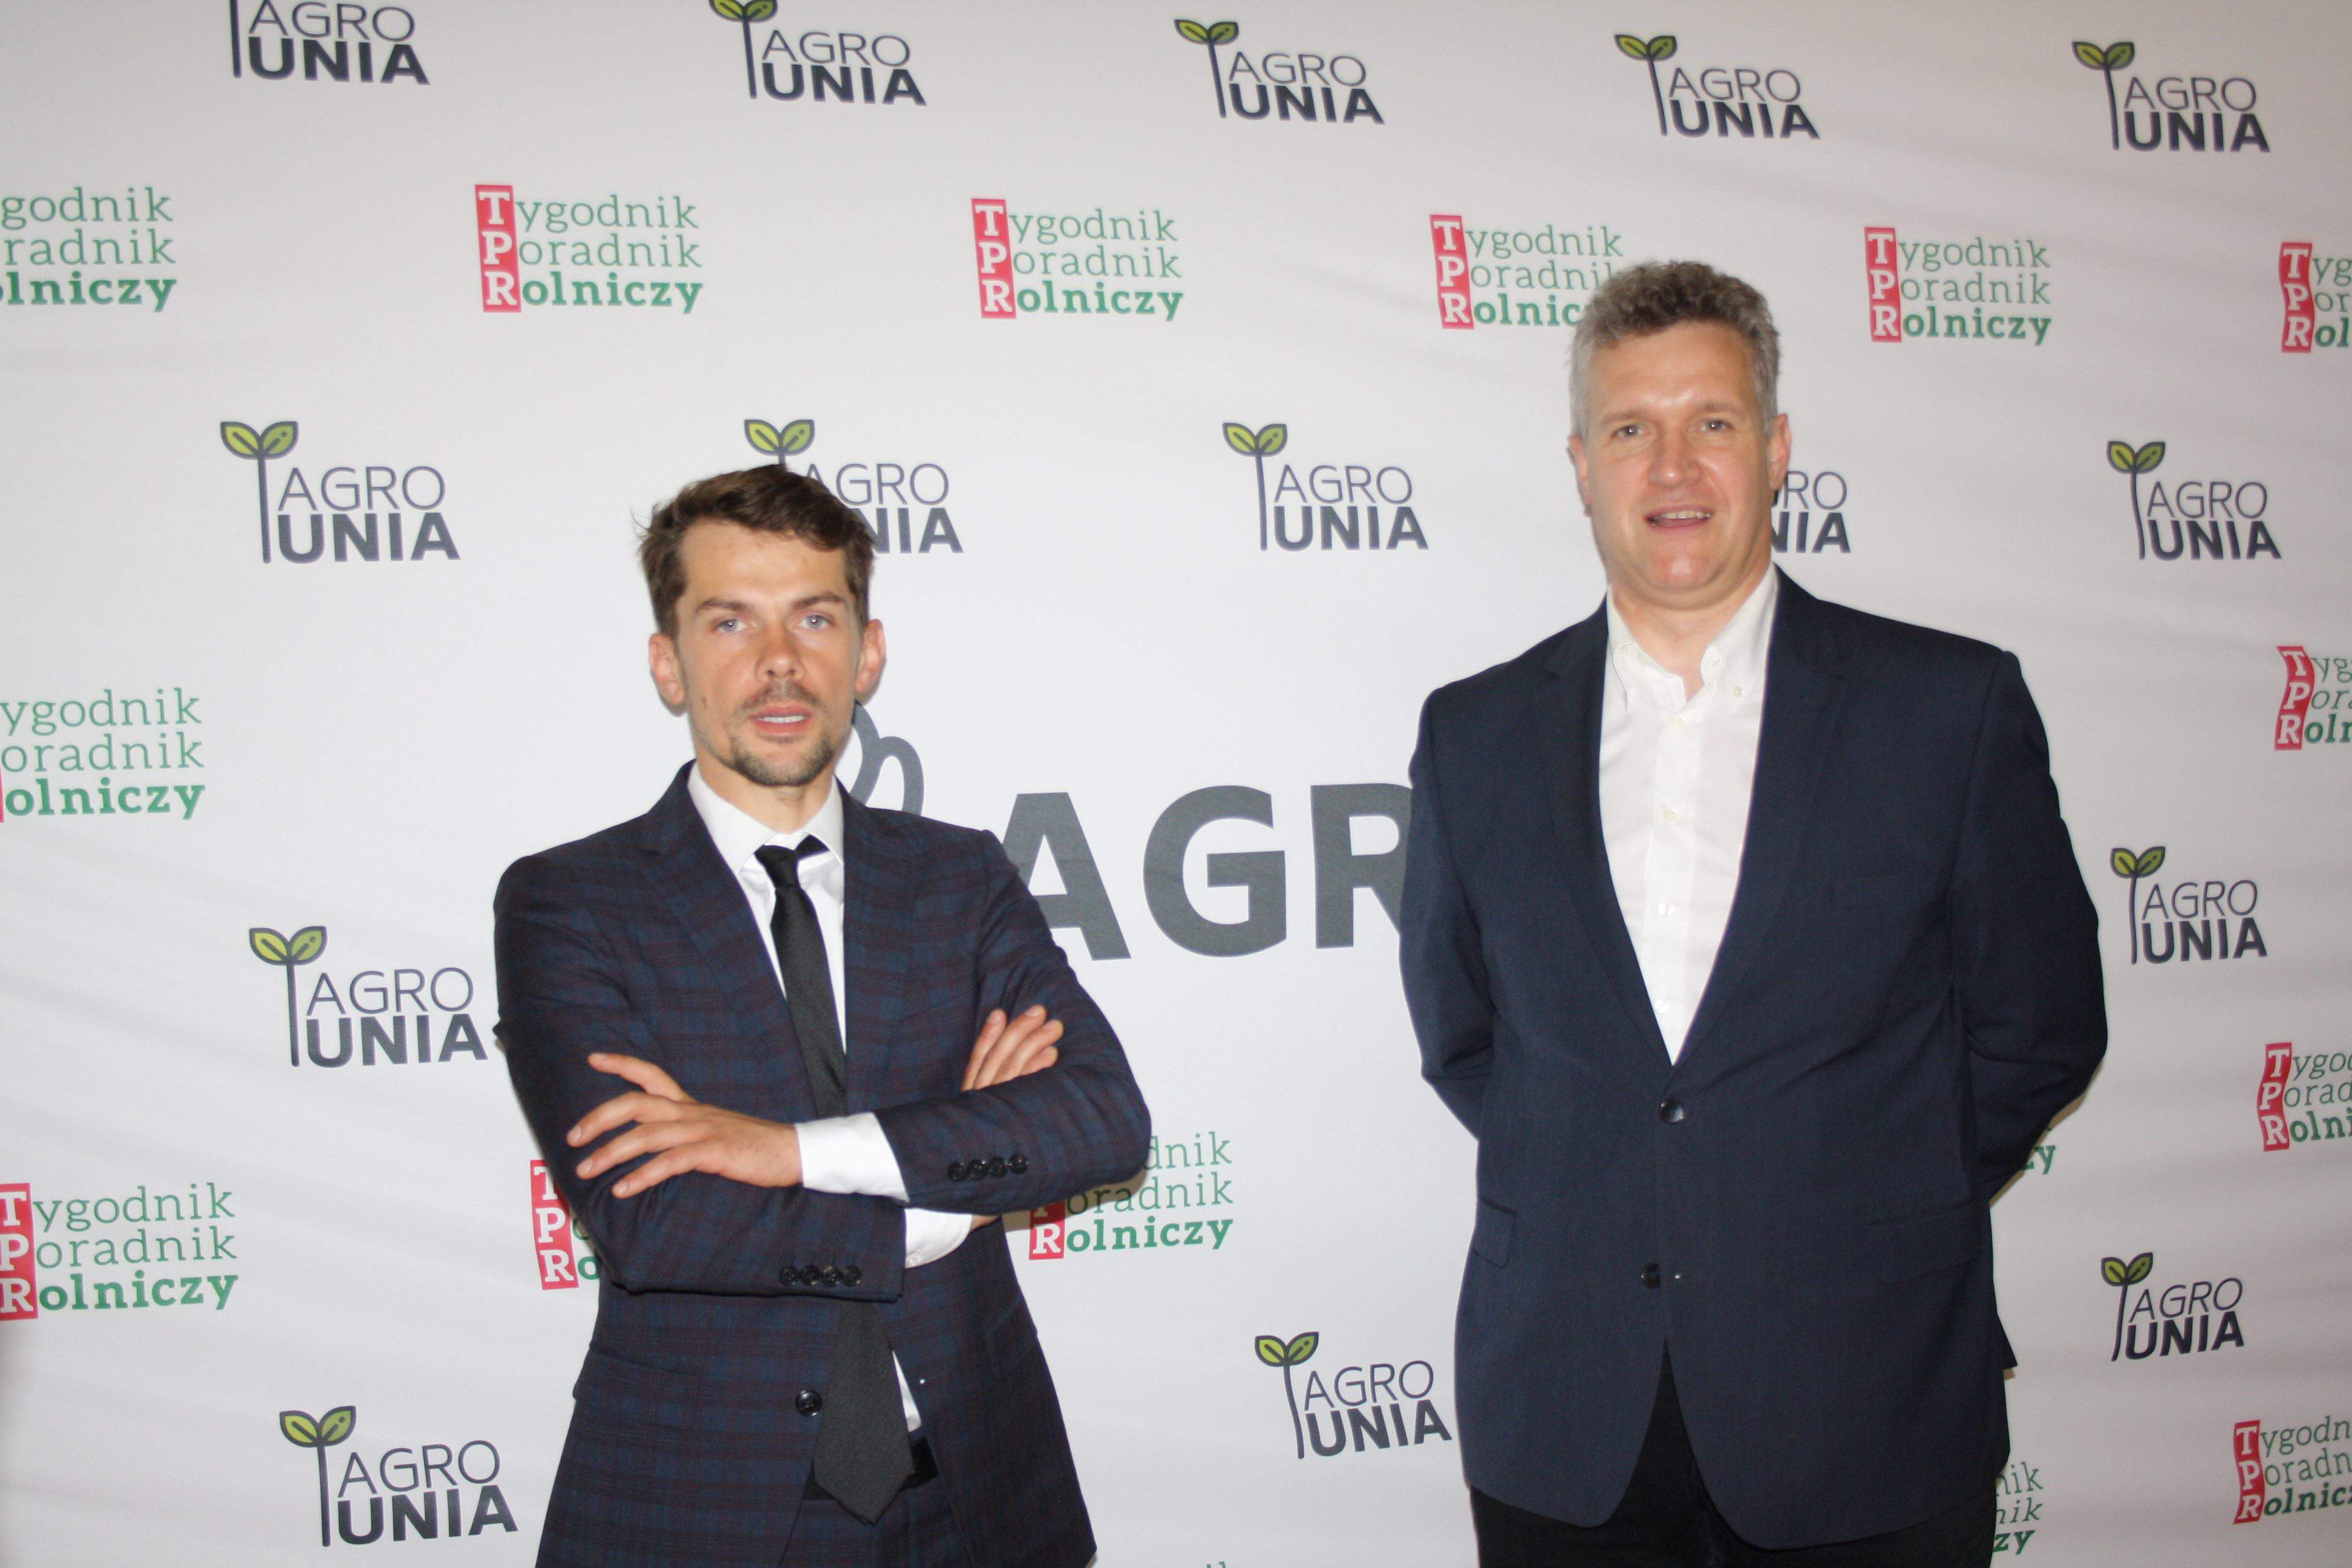 Debatę prowadzili Paweł Kuroczycki, redaktor naczelny „Tygodnika Poradnika Rolniczego” oraz Michał Kołodziejczak, lider AGRO Unii 